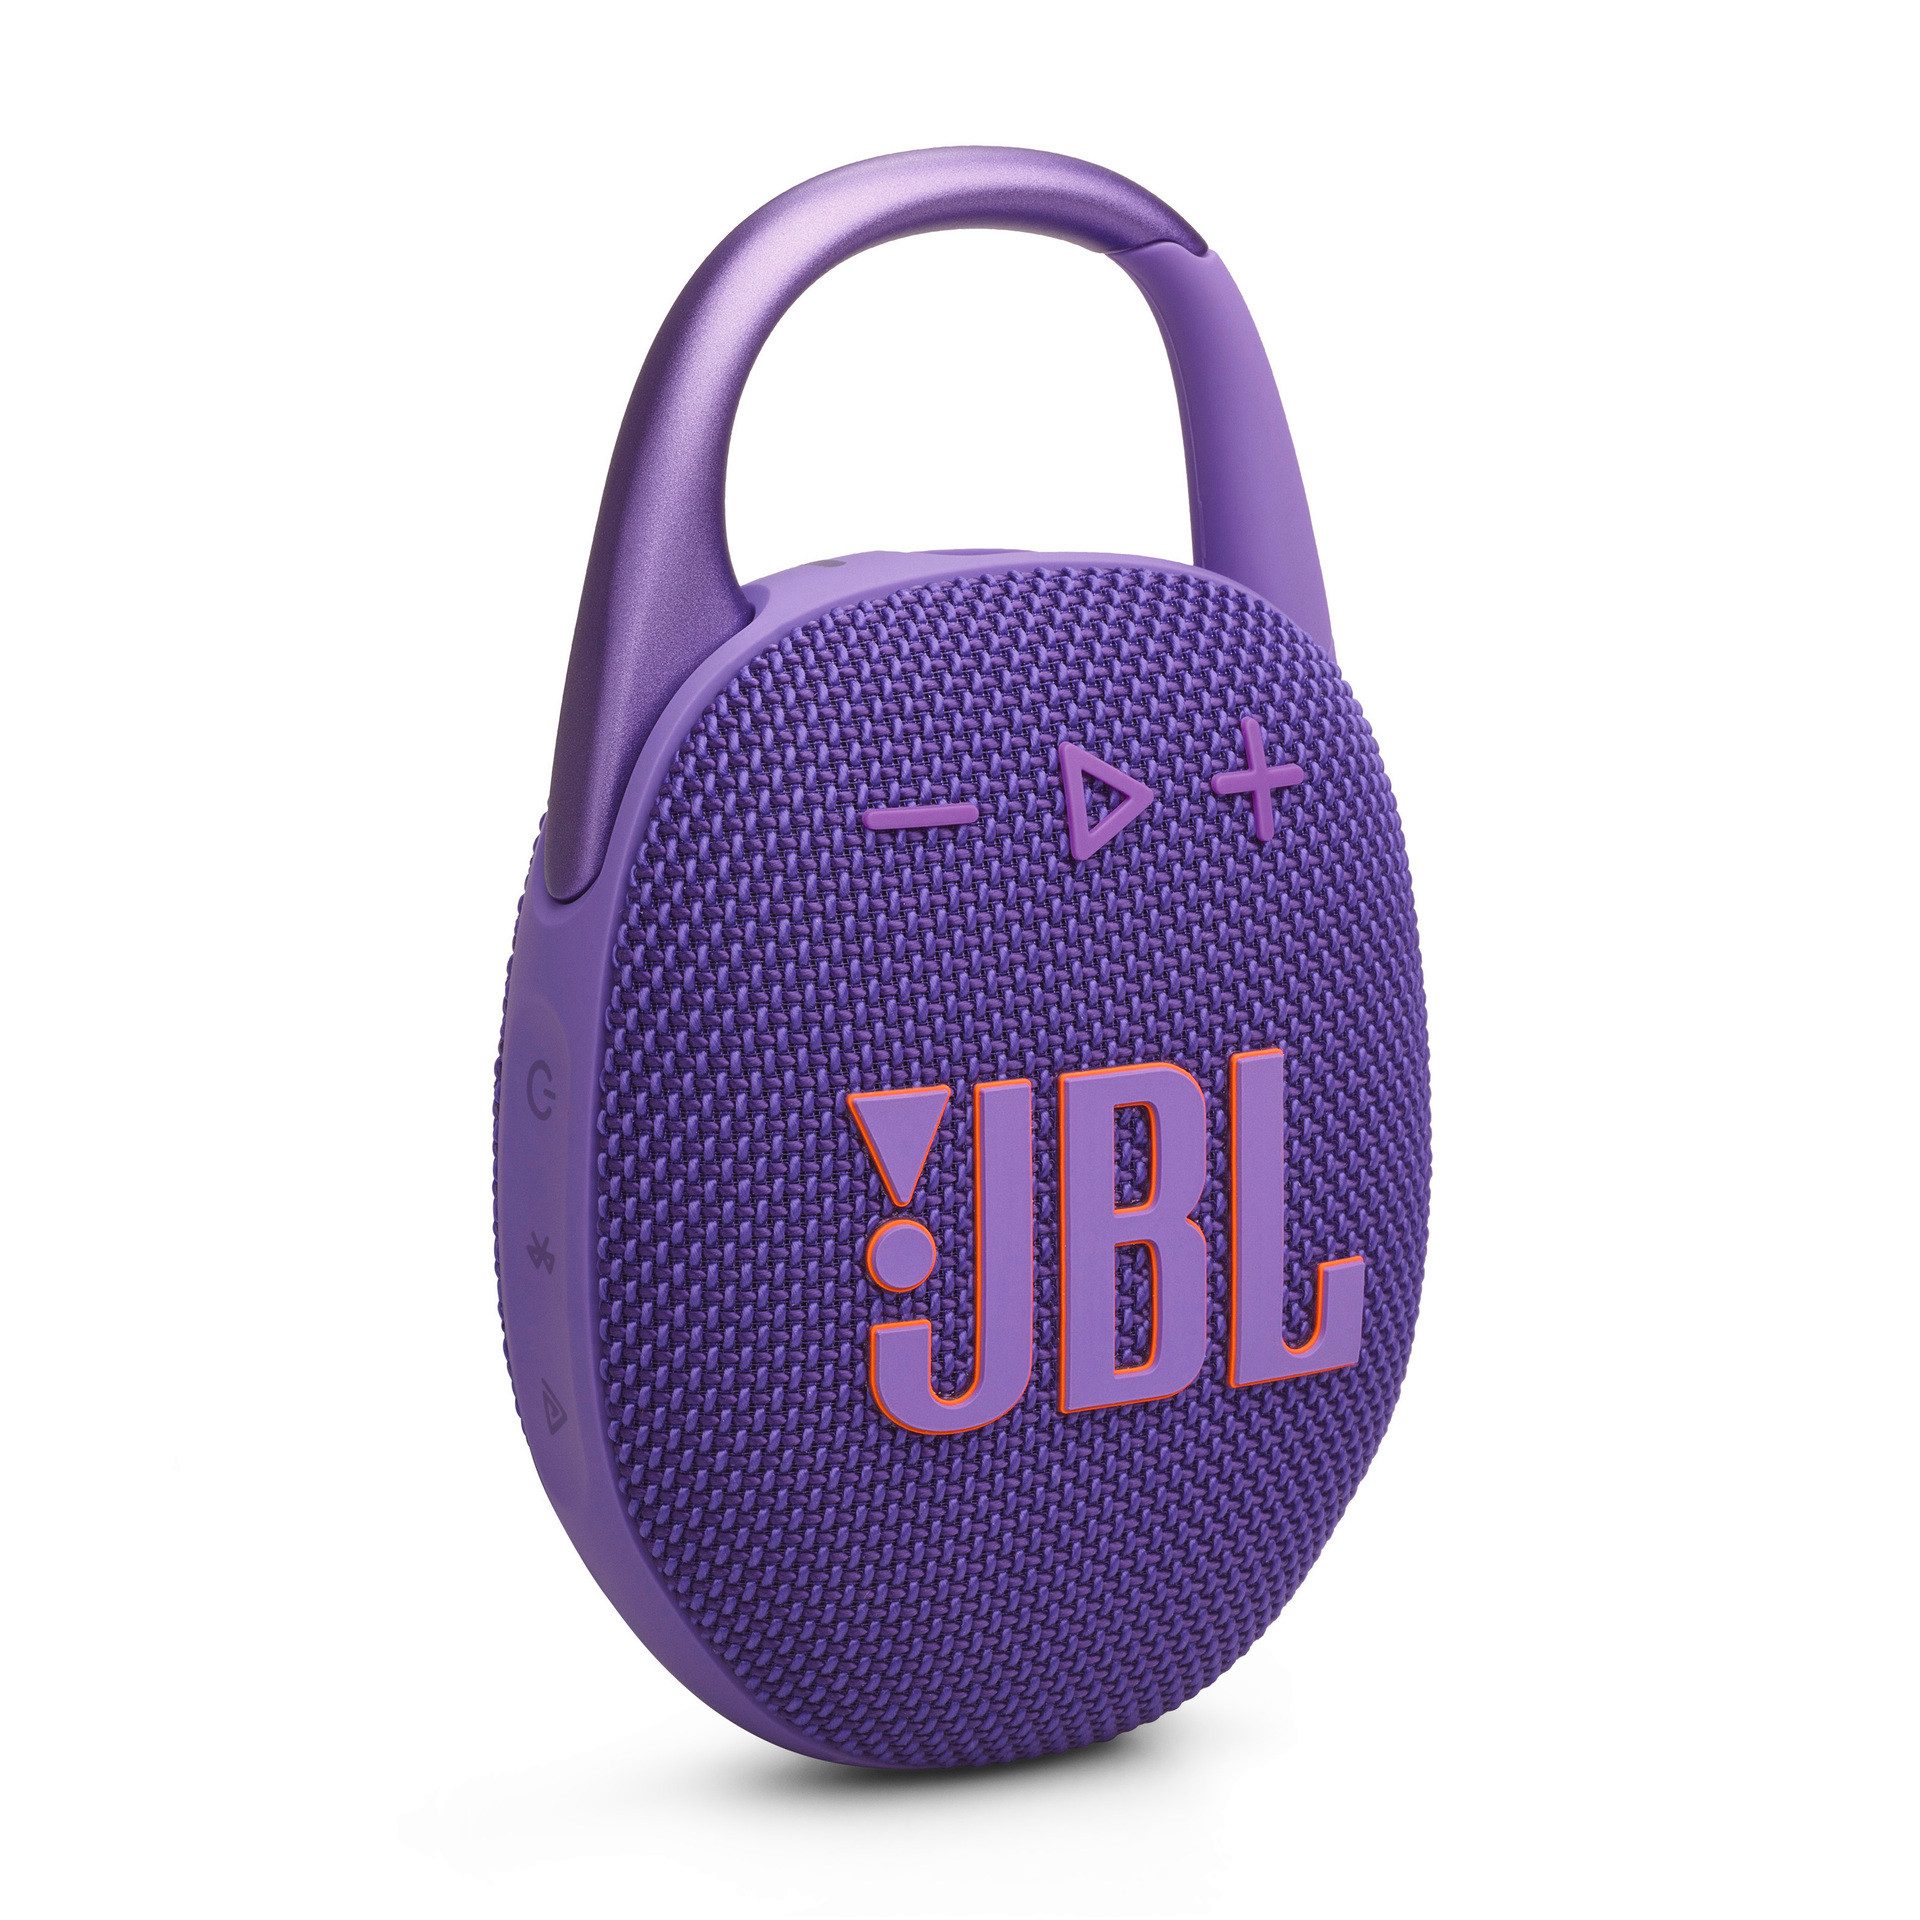 JBL Clip 5 Bluetooth-Lautsprecher (Bluetooth, 7 W, ultra-kompakt, wasser- und staubgeschützt (IP67), 7 Watt RMS)